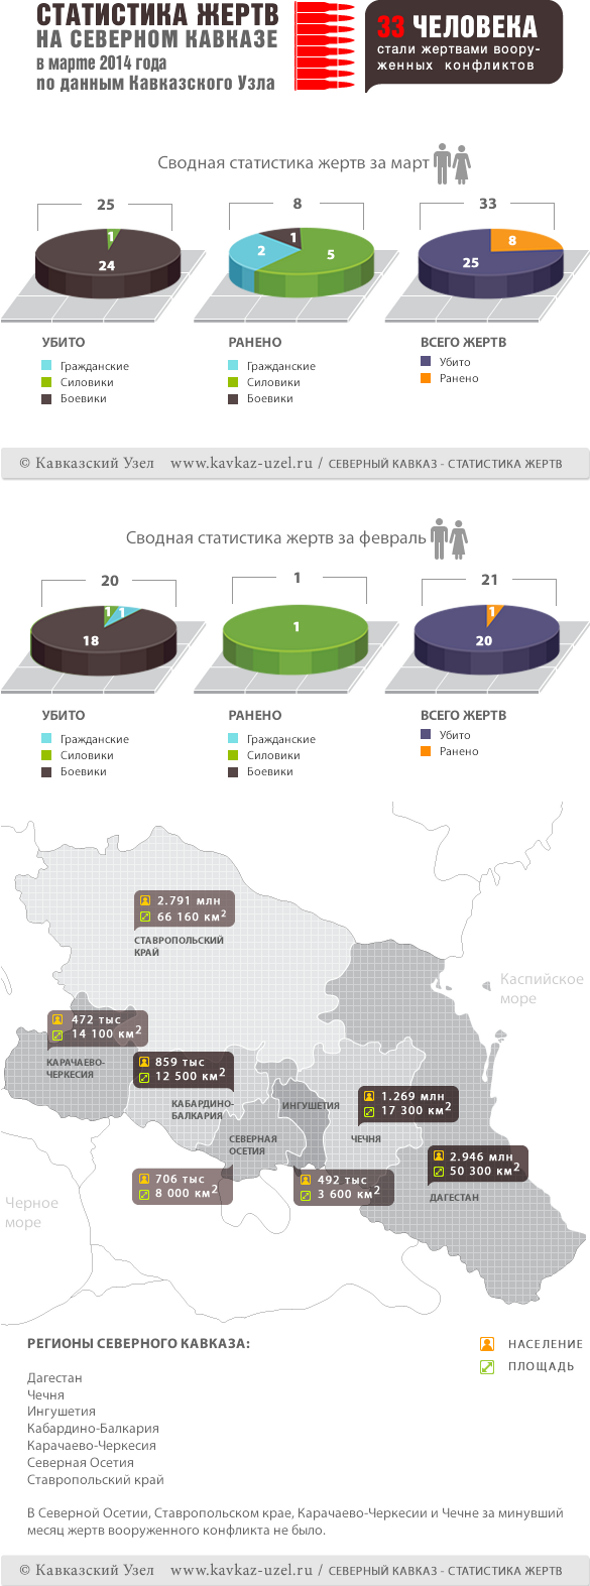 Инфографика. Статистика жертв на Северном Кавказе в марте 2014 года по данным "Кавказского узла"